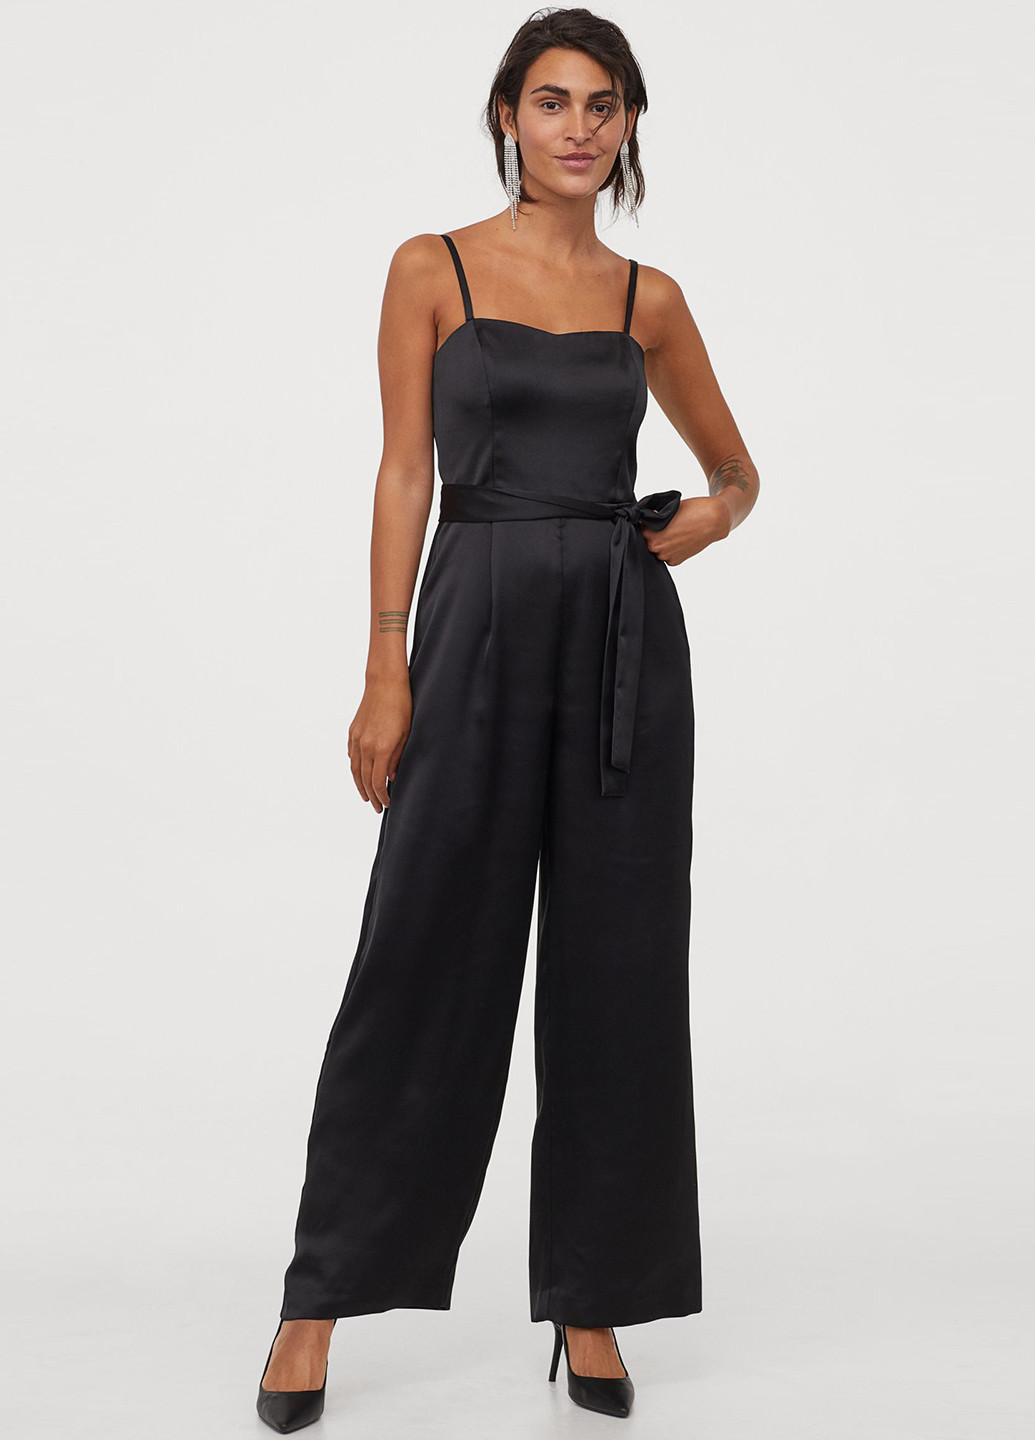 Комбинезон H&M комбинезон-брюки однотонный чёрный вечерний полиэстер, атлас